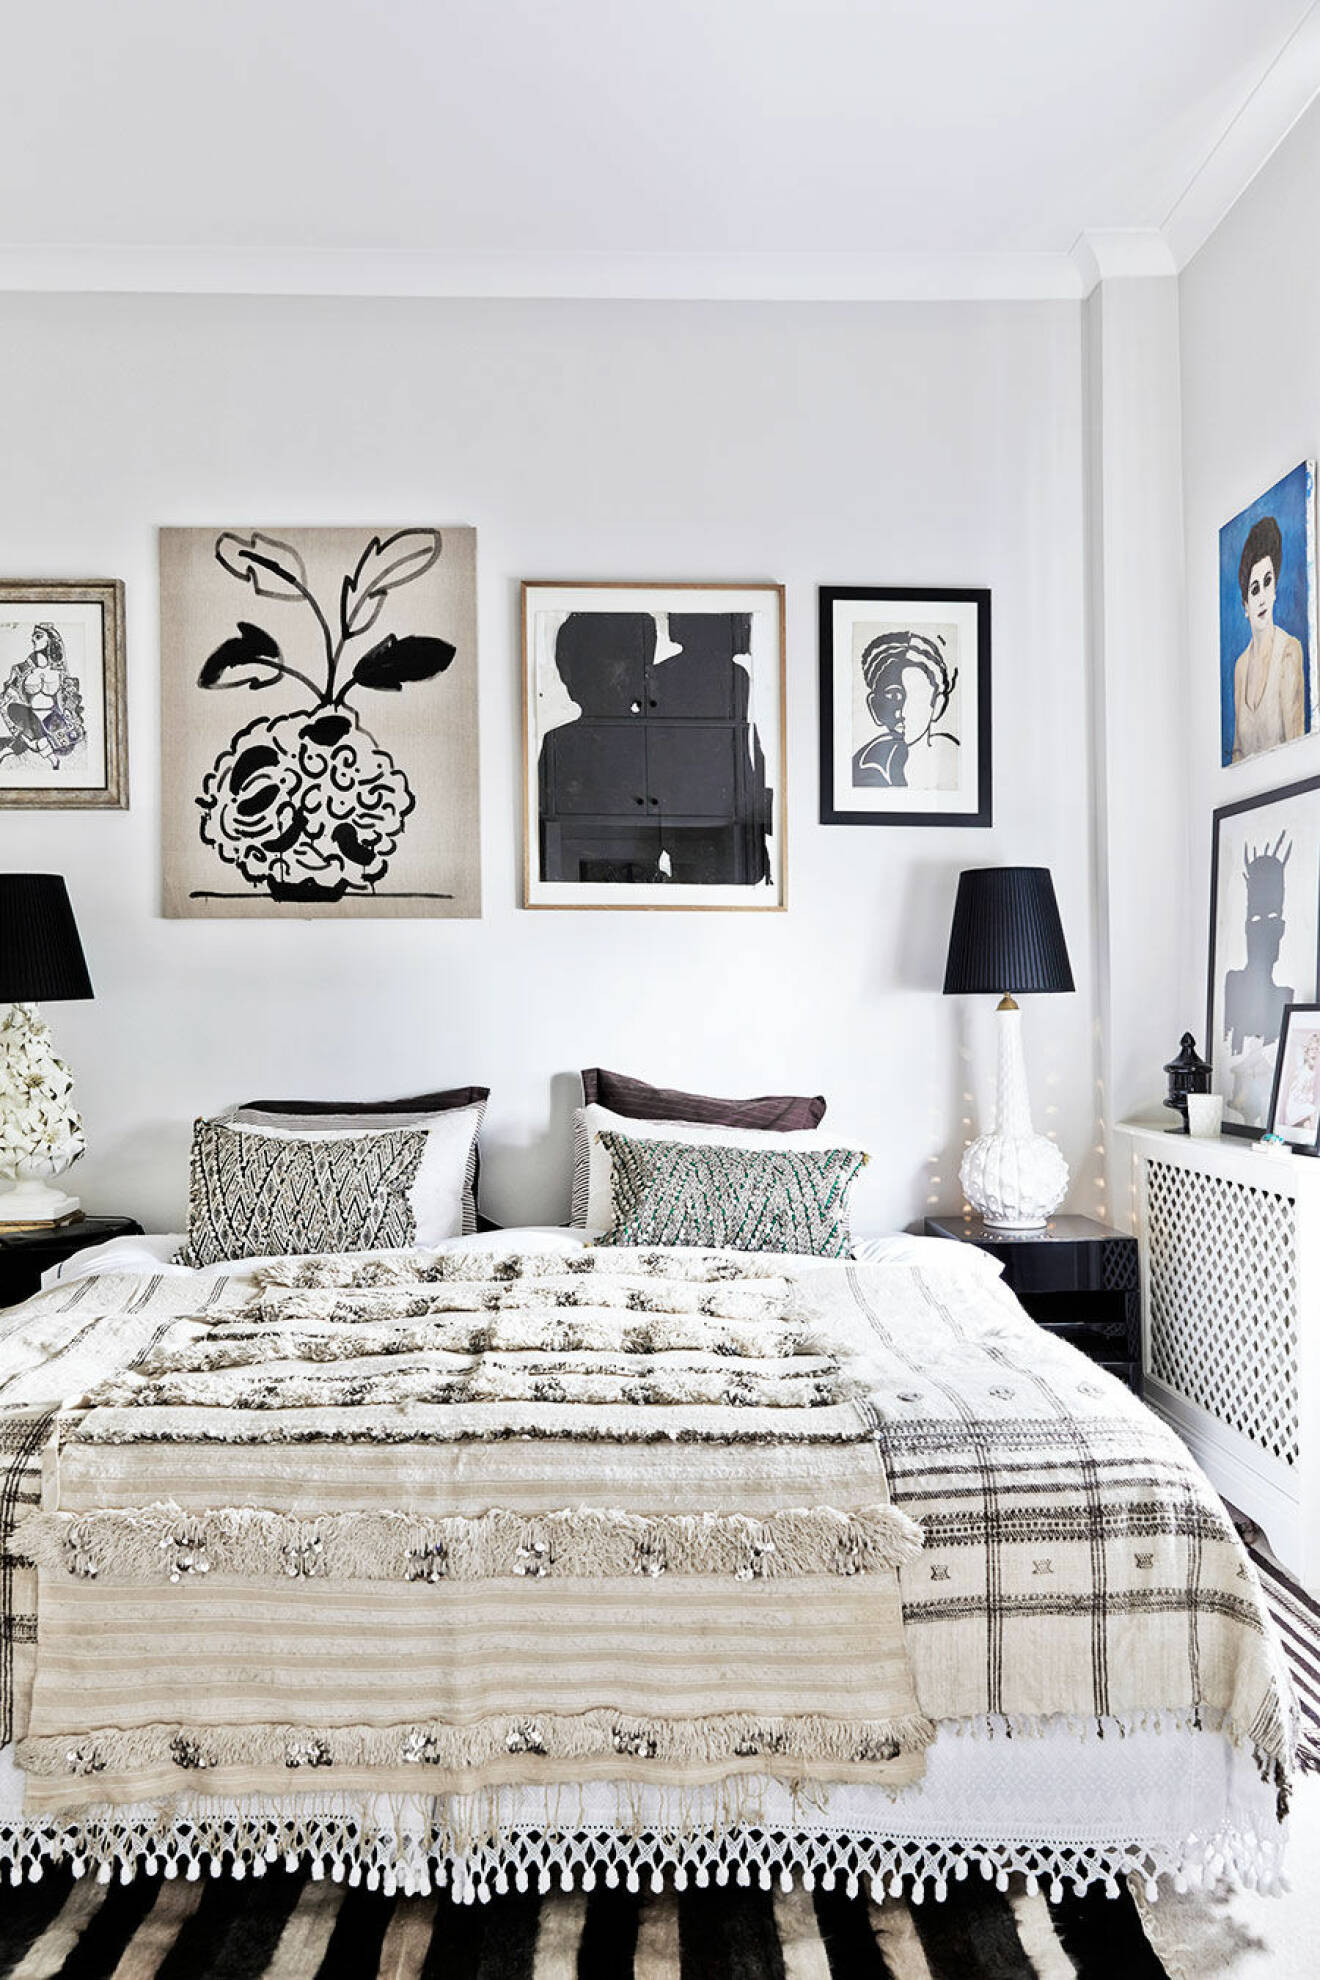 Inred med mönstrade sängkläder och geometriska konstverk på väggarna